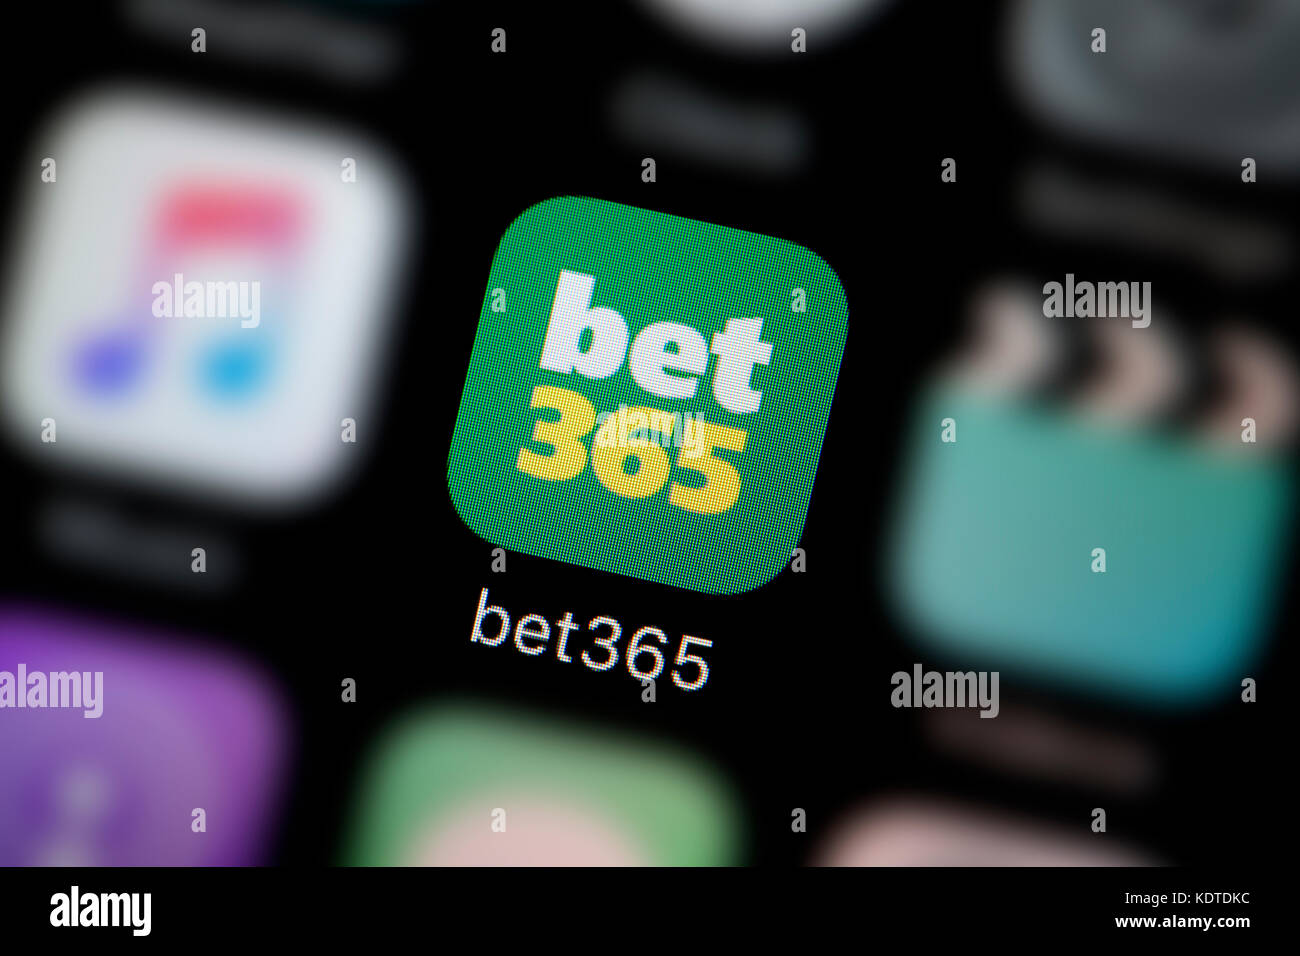 casino bet365 é confiável